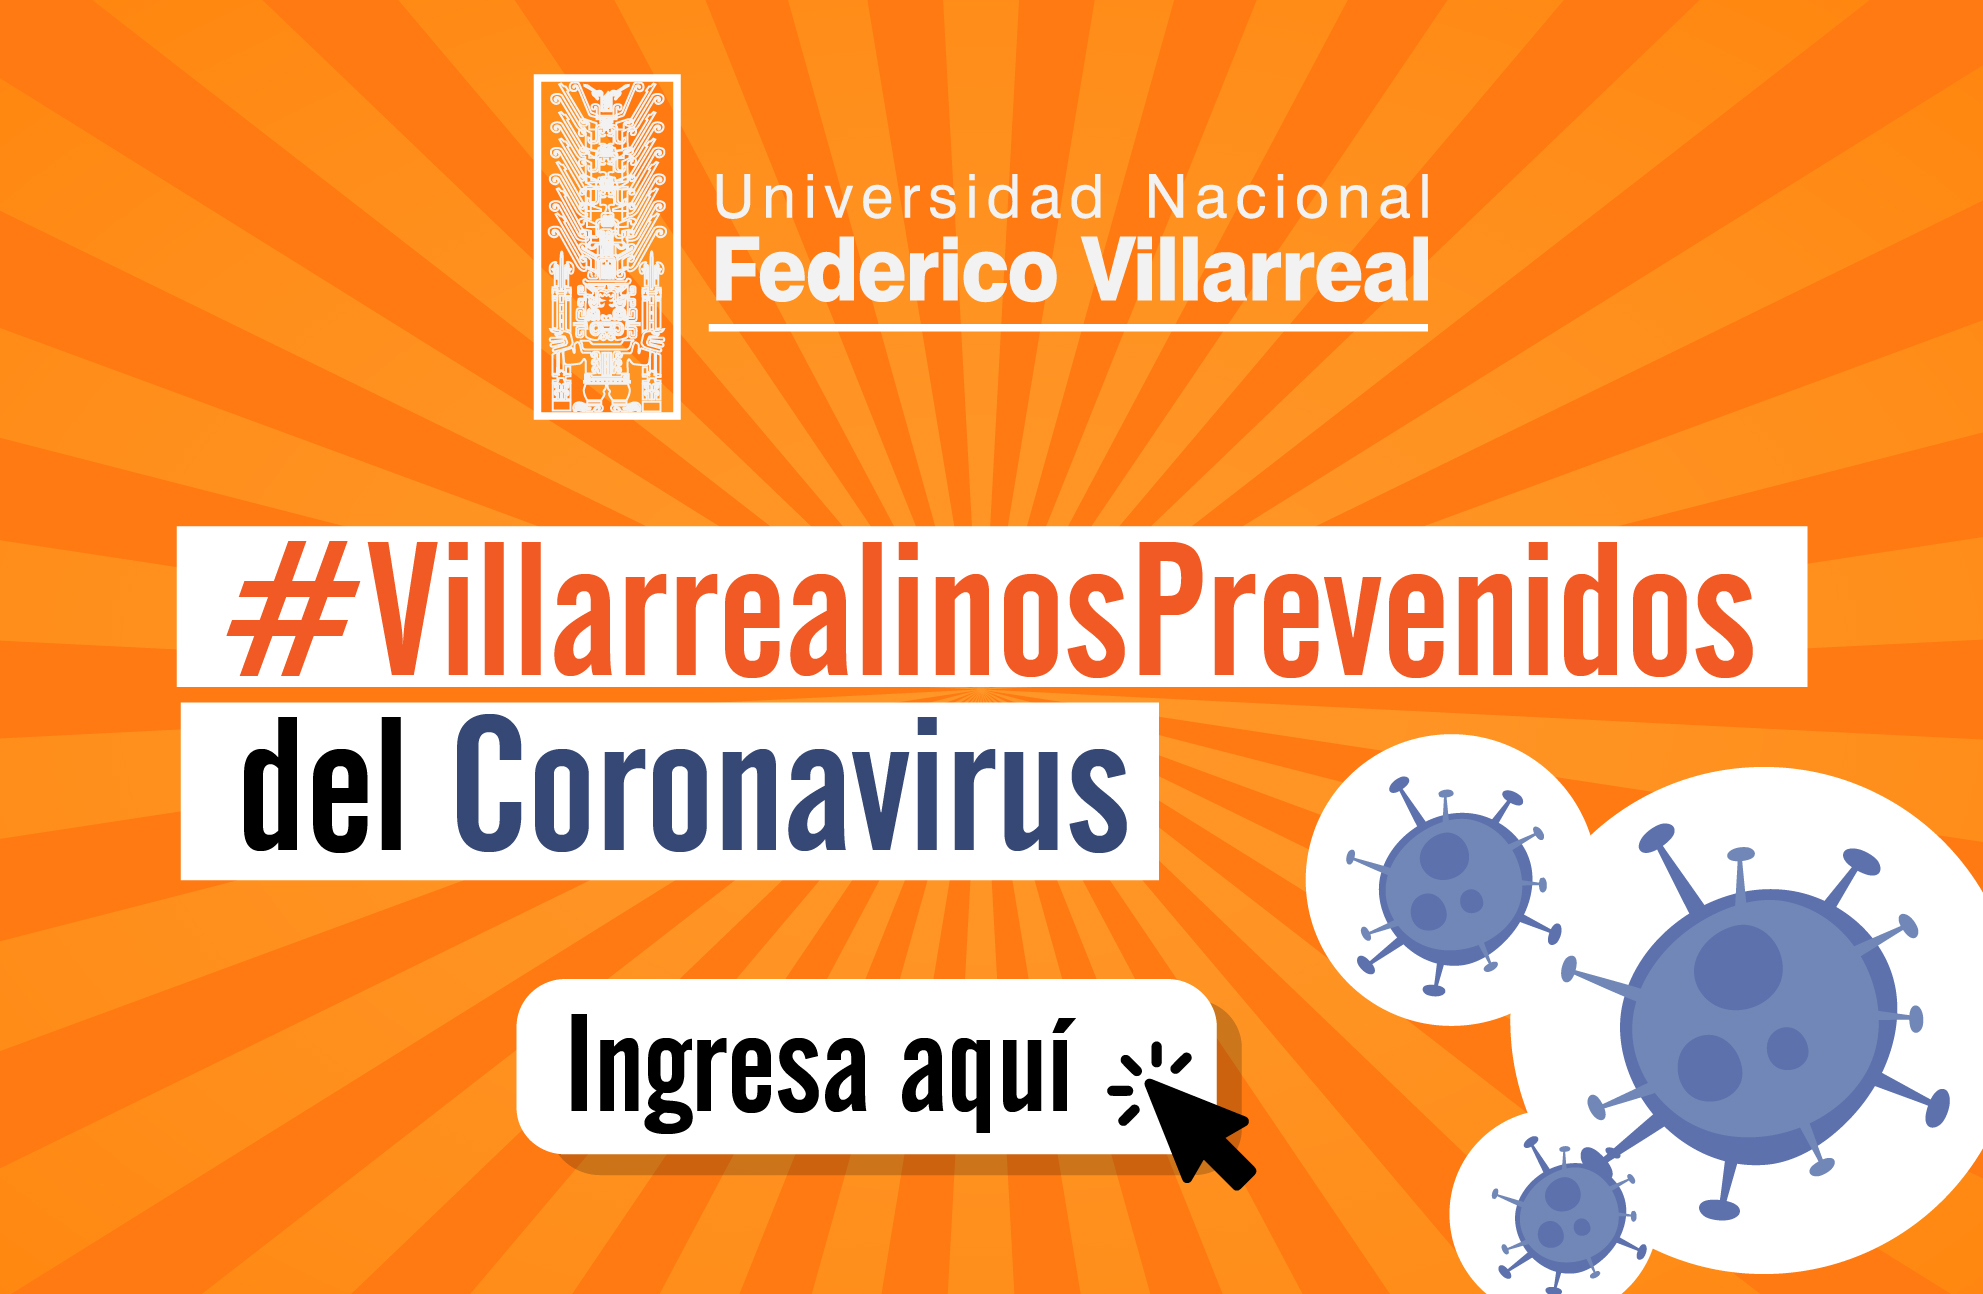 Villarrealinos prevenidos